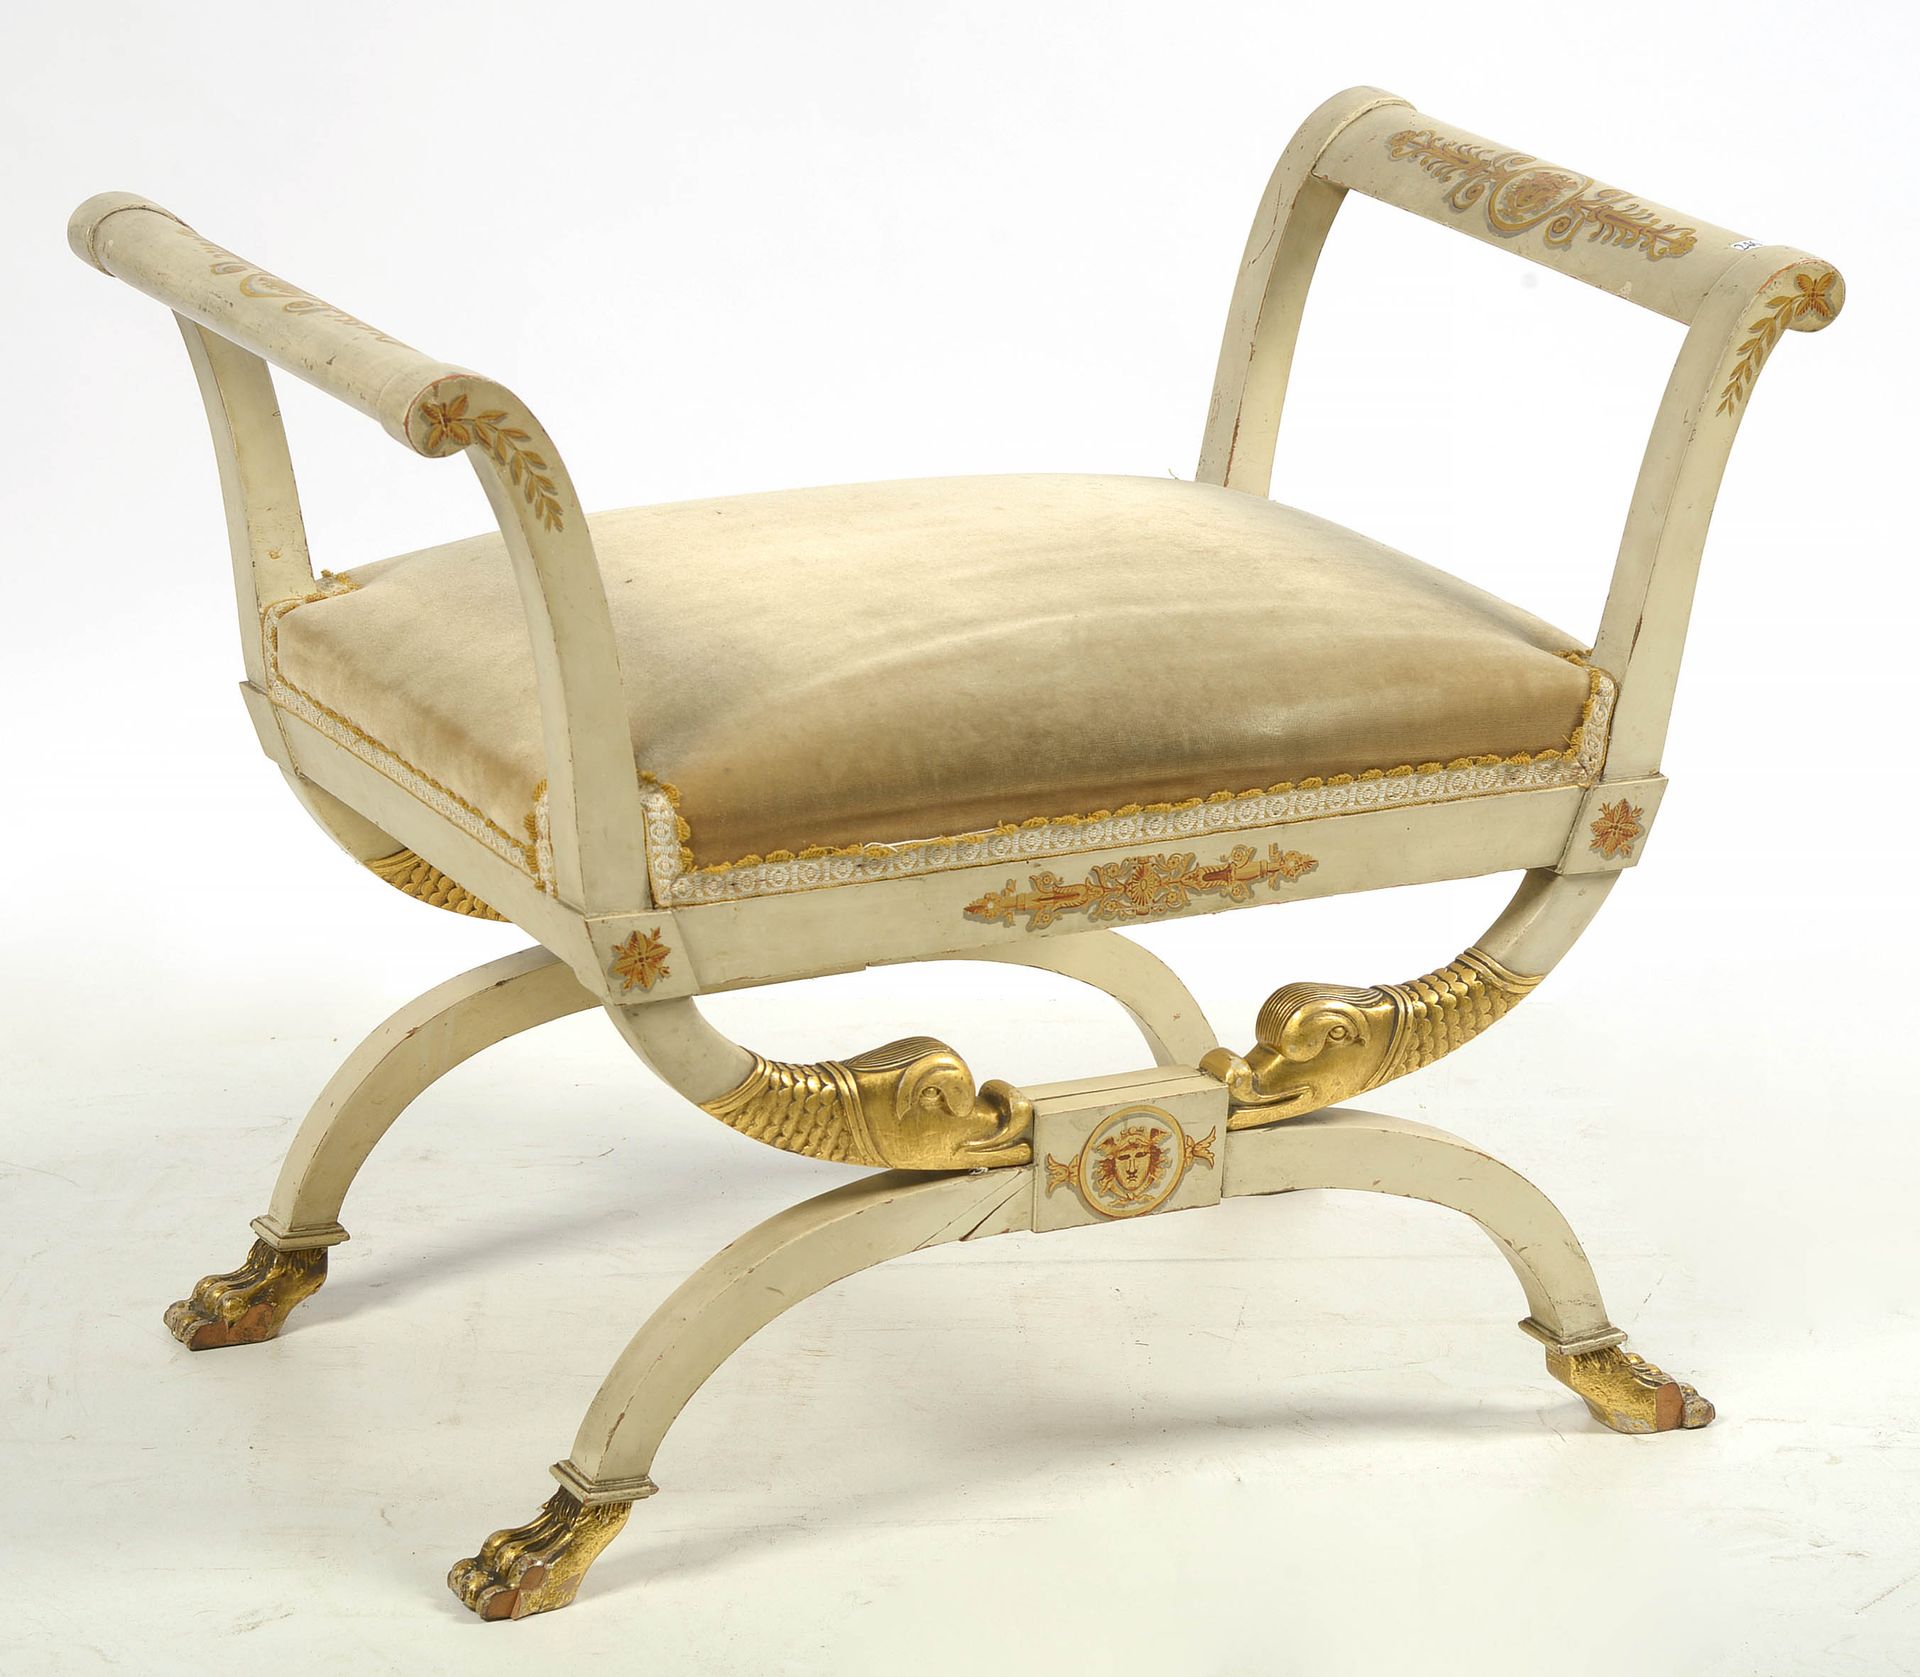 Null 雕刻和铜化的木质帝国咖啡壶，带有金色装饰。椅垫为奶油色天鹅绒。年代：19世纪初。(脚已丢失)。高：+/-58.5厘米。长：+/-74厘米。